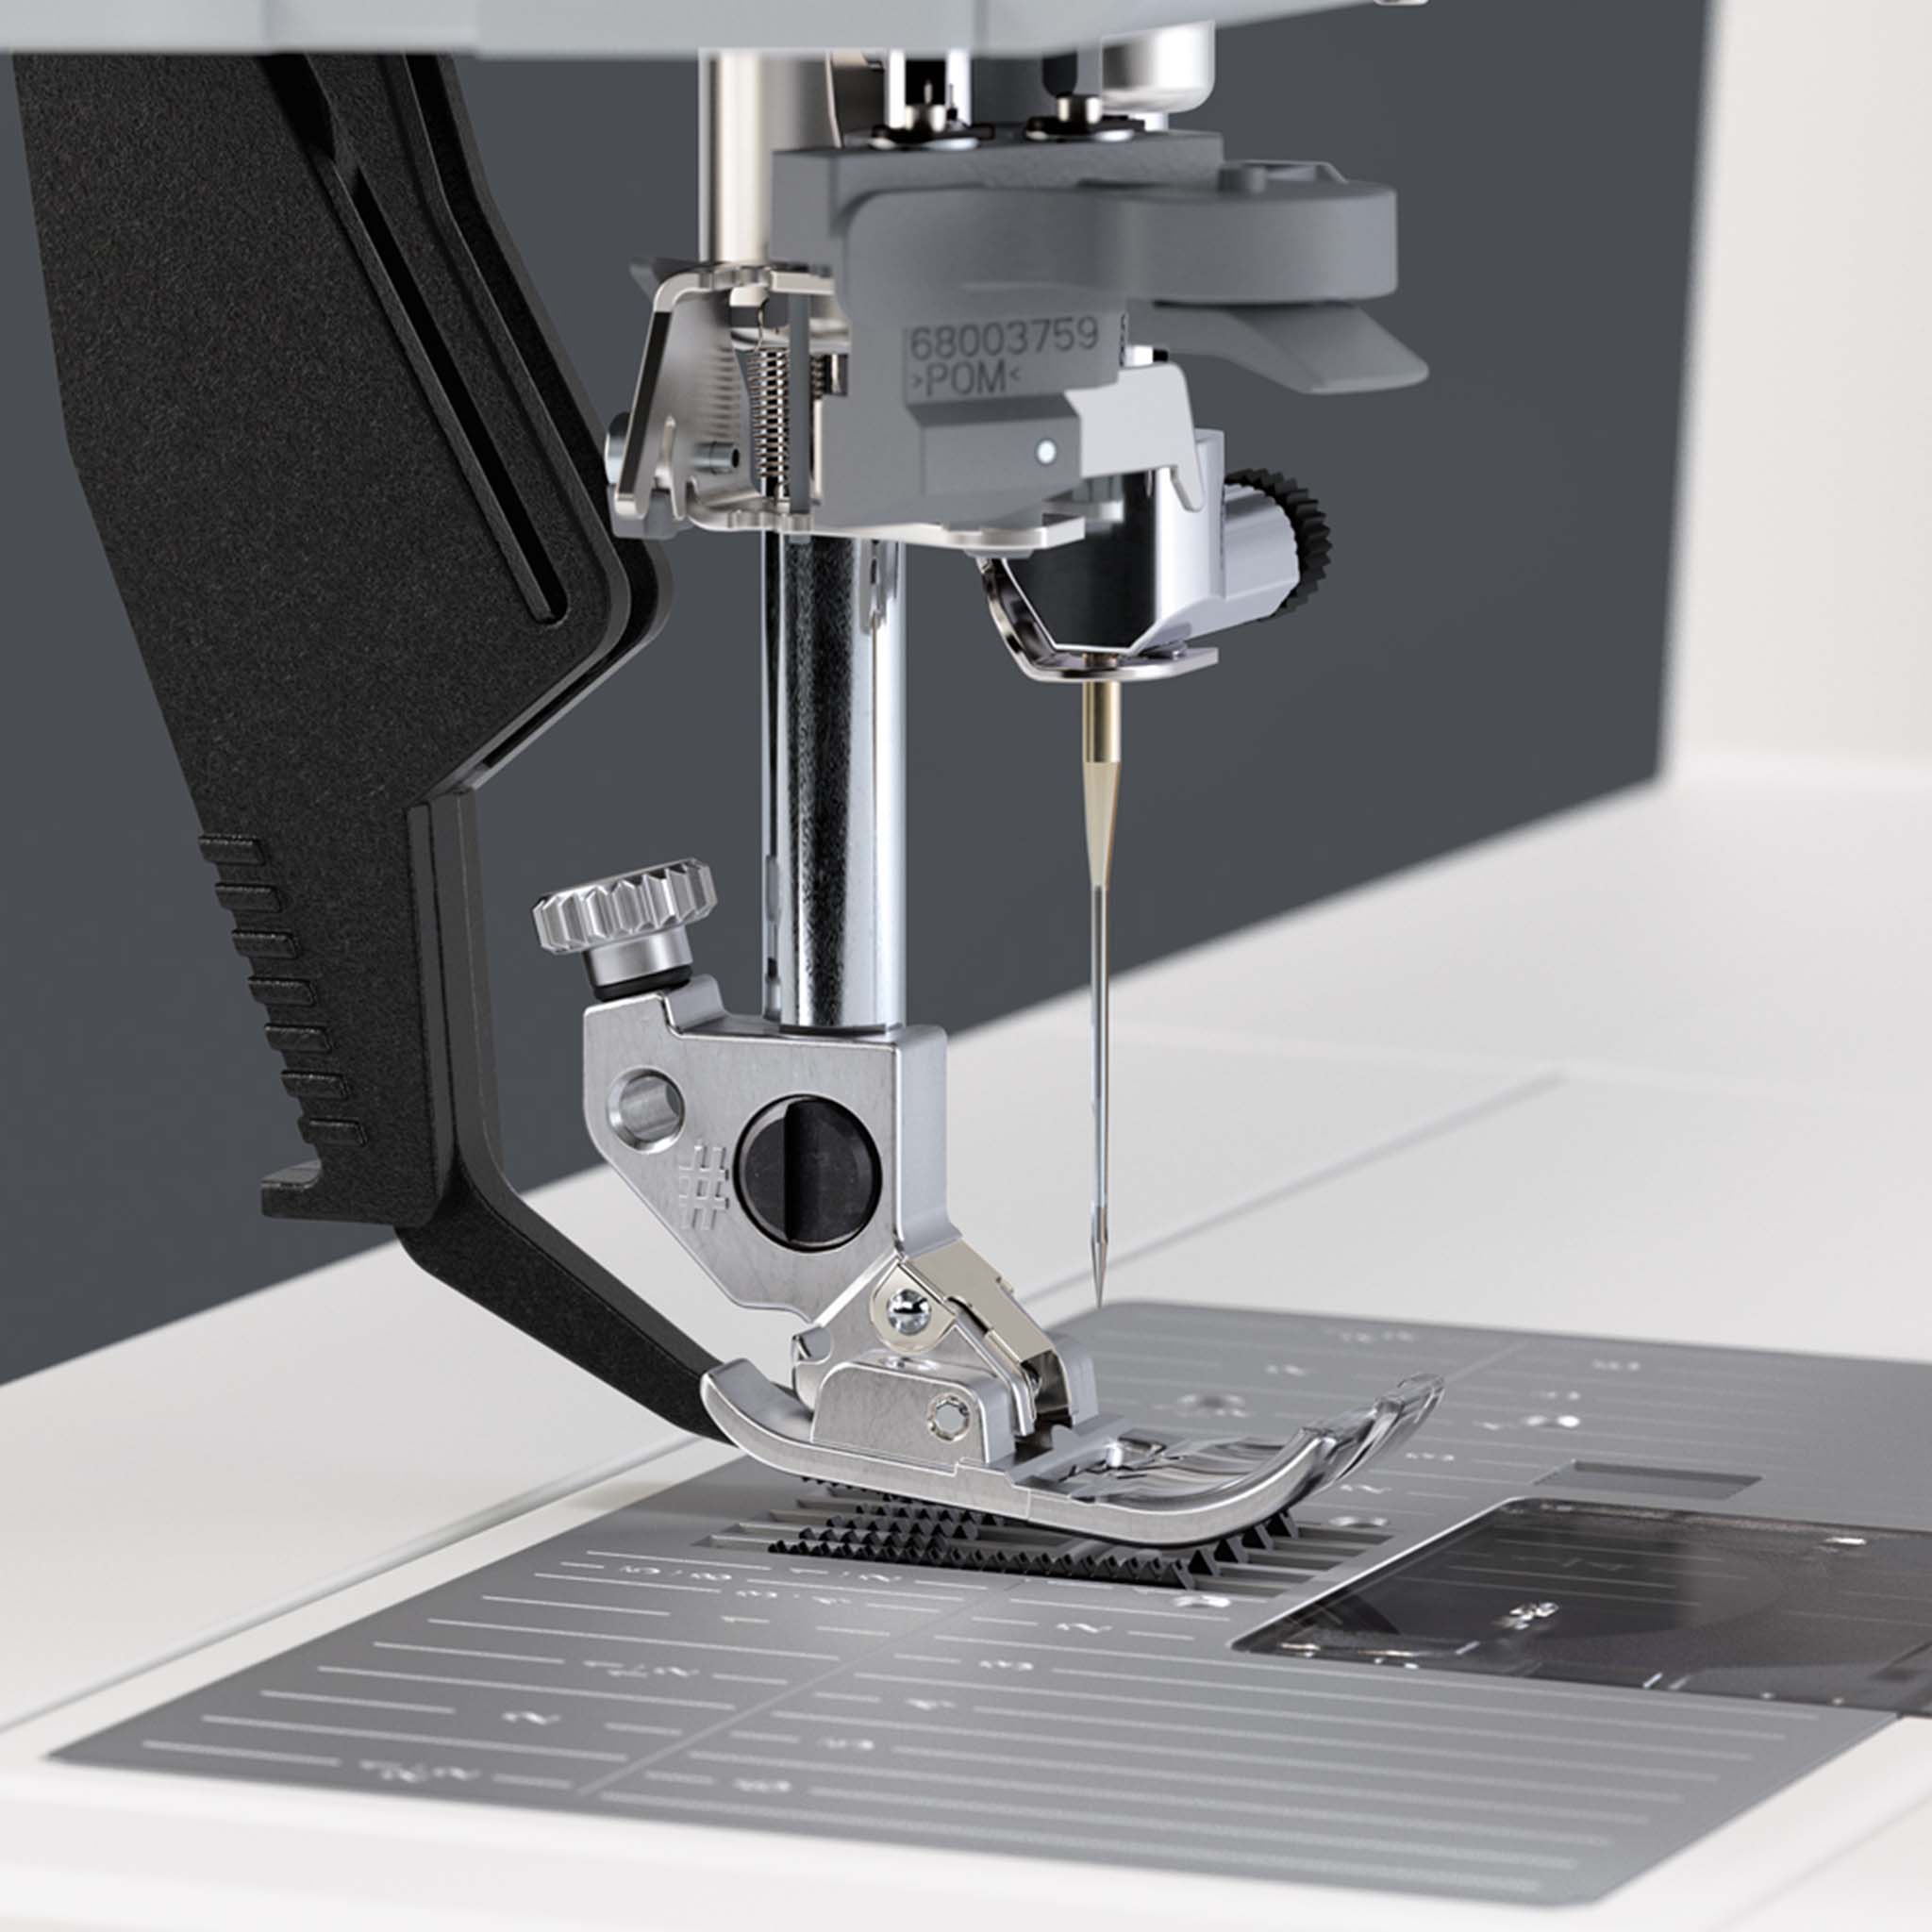 Máquina de coser y bordar Creative Icon 2 de PFAFF 